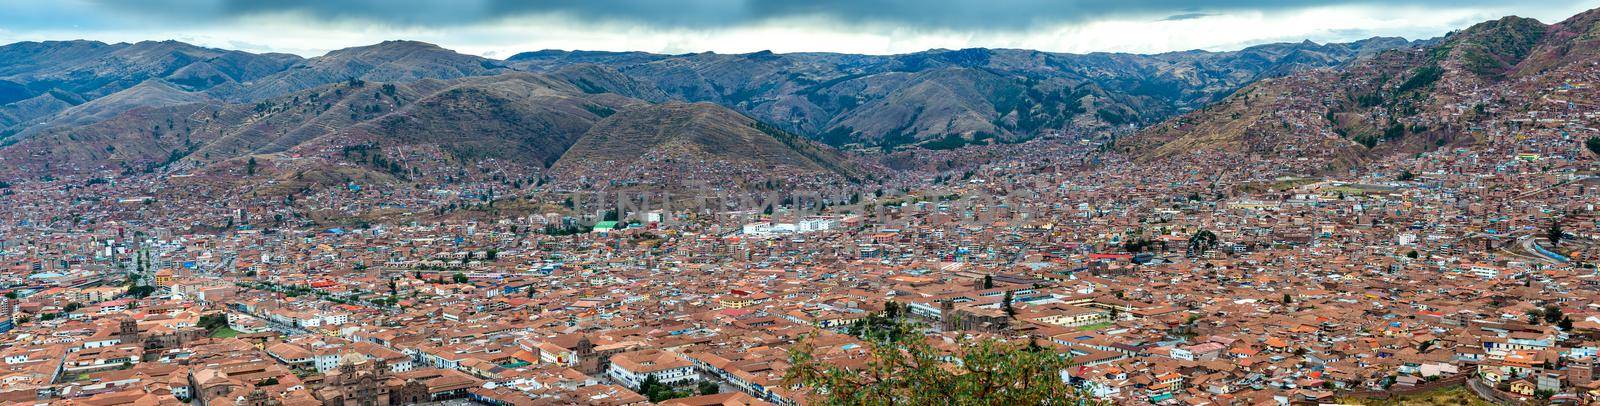 Panorama view of city Cusco by tan4ikk1